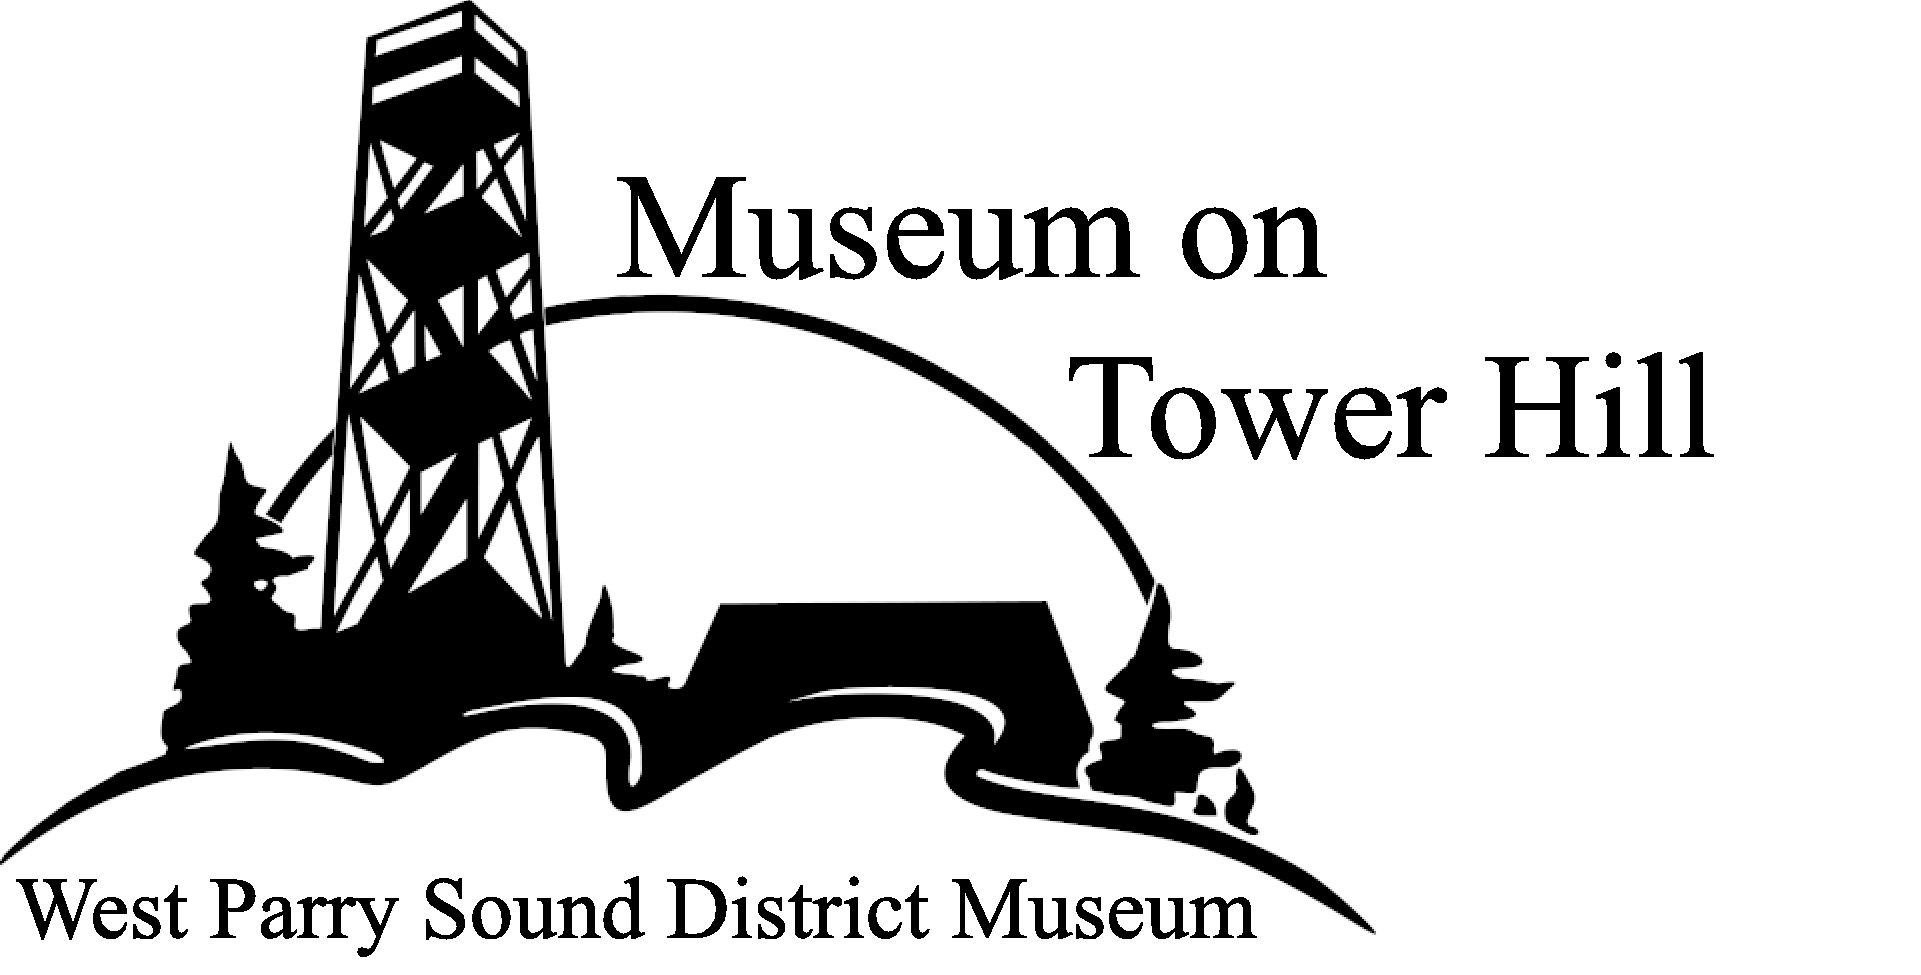 logo de museum on tower hill west parry sound district museum